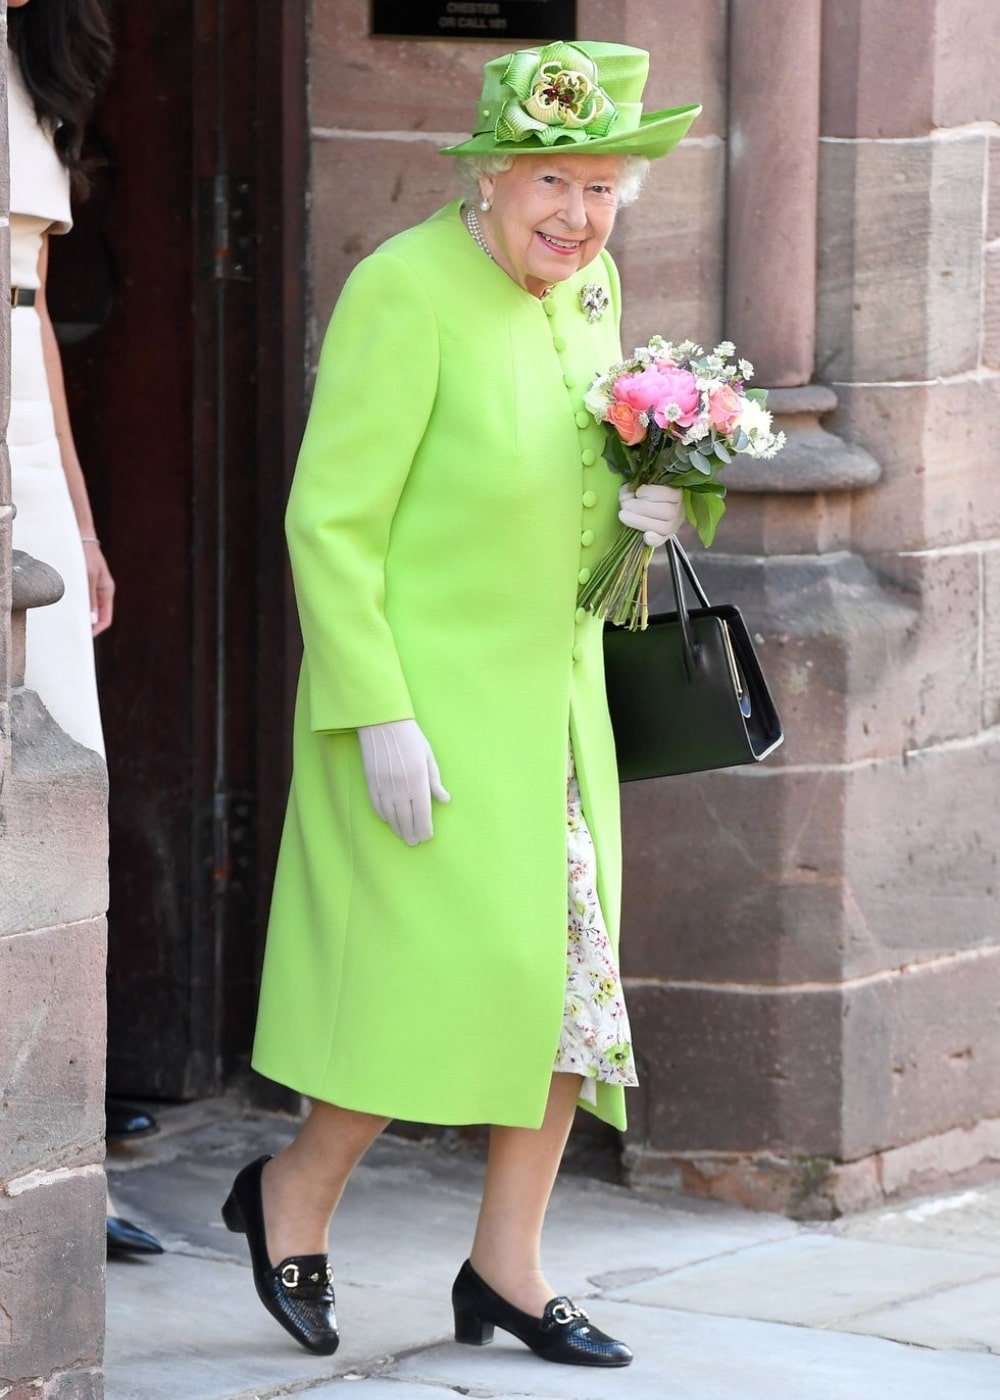 Rainha Elizabeth II - conjunto de alfaiataria verde limão, mocassins pretos e bolsa - Rainha Elizabeth II - Outono - andando na rua - https://stealthelook.com.br